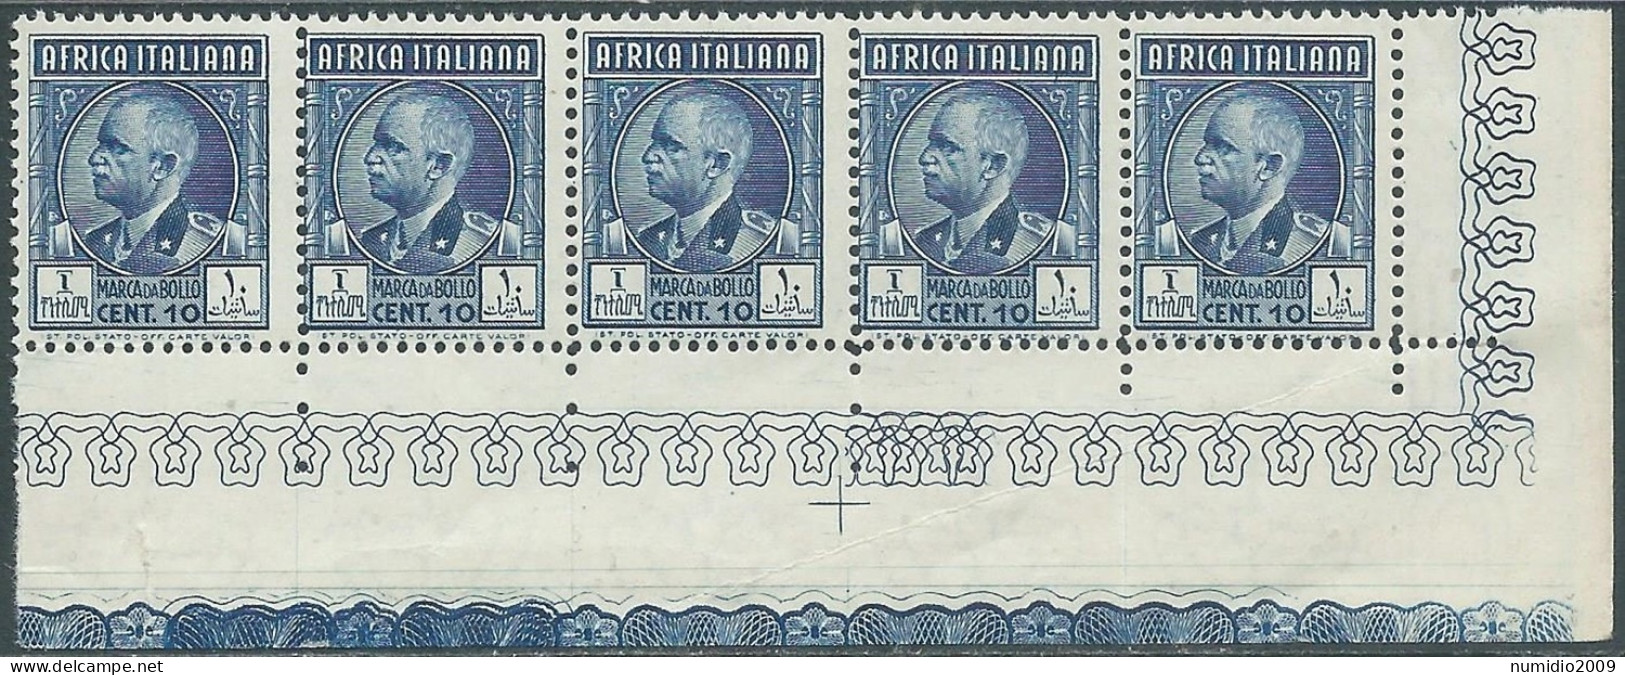 1939 AFRICA ITALIANA MARCA DA BOLLO 10 CENT BLOCCO DI 5 VALORI MNH ** - CZ39-3 - Africa Orientale Italiana